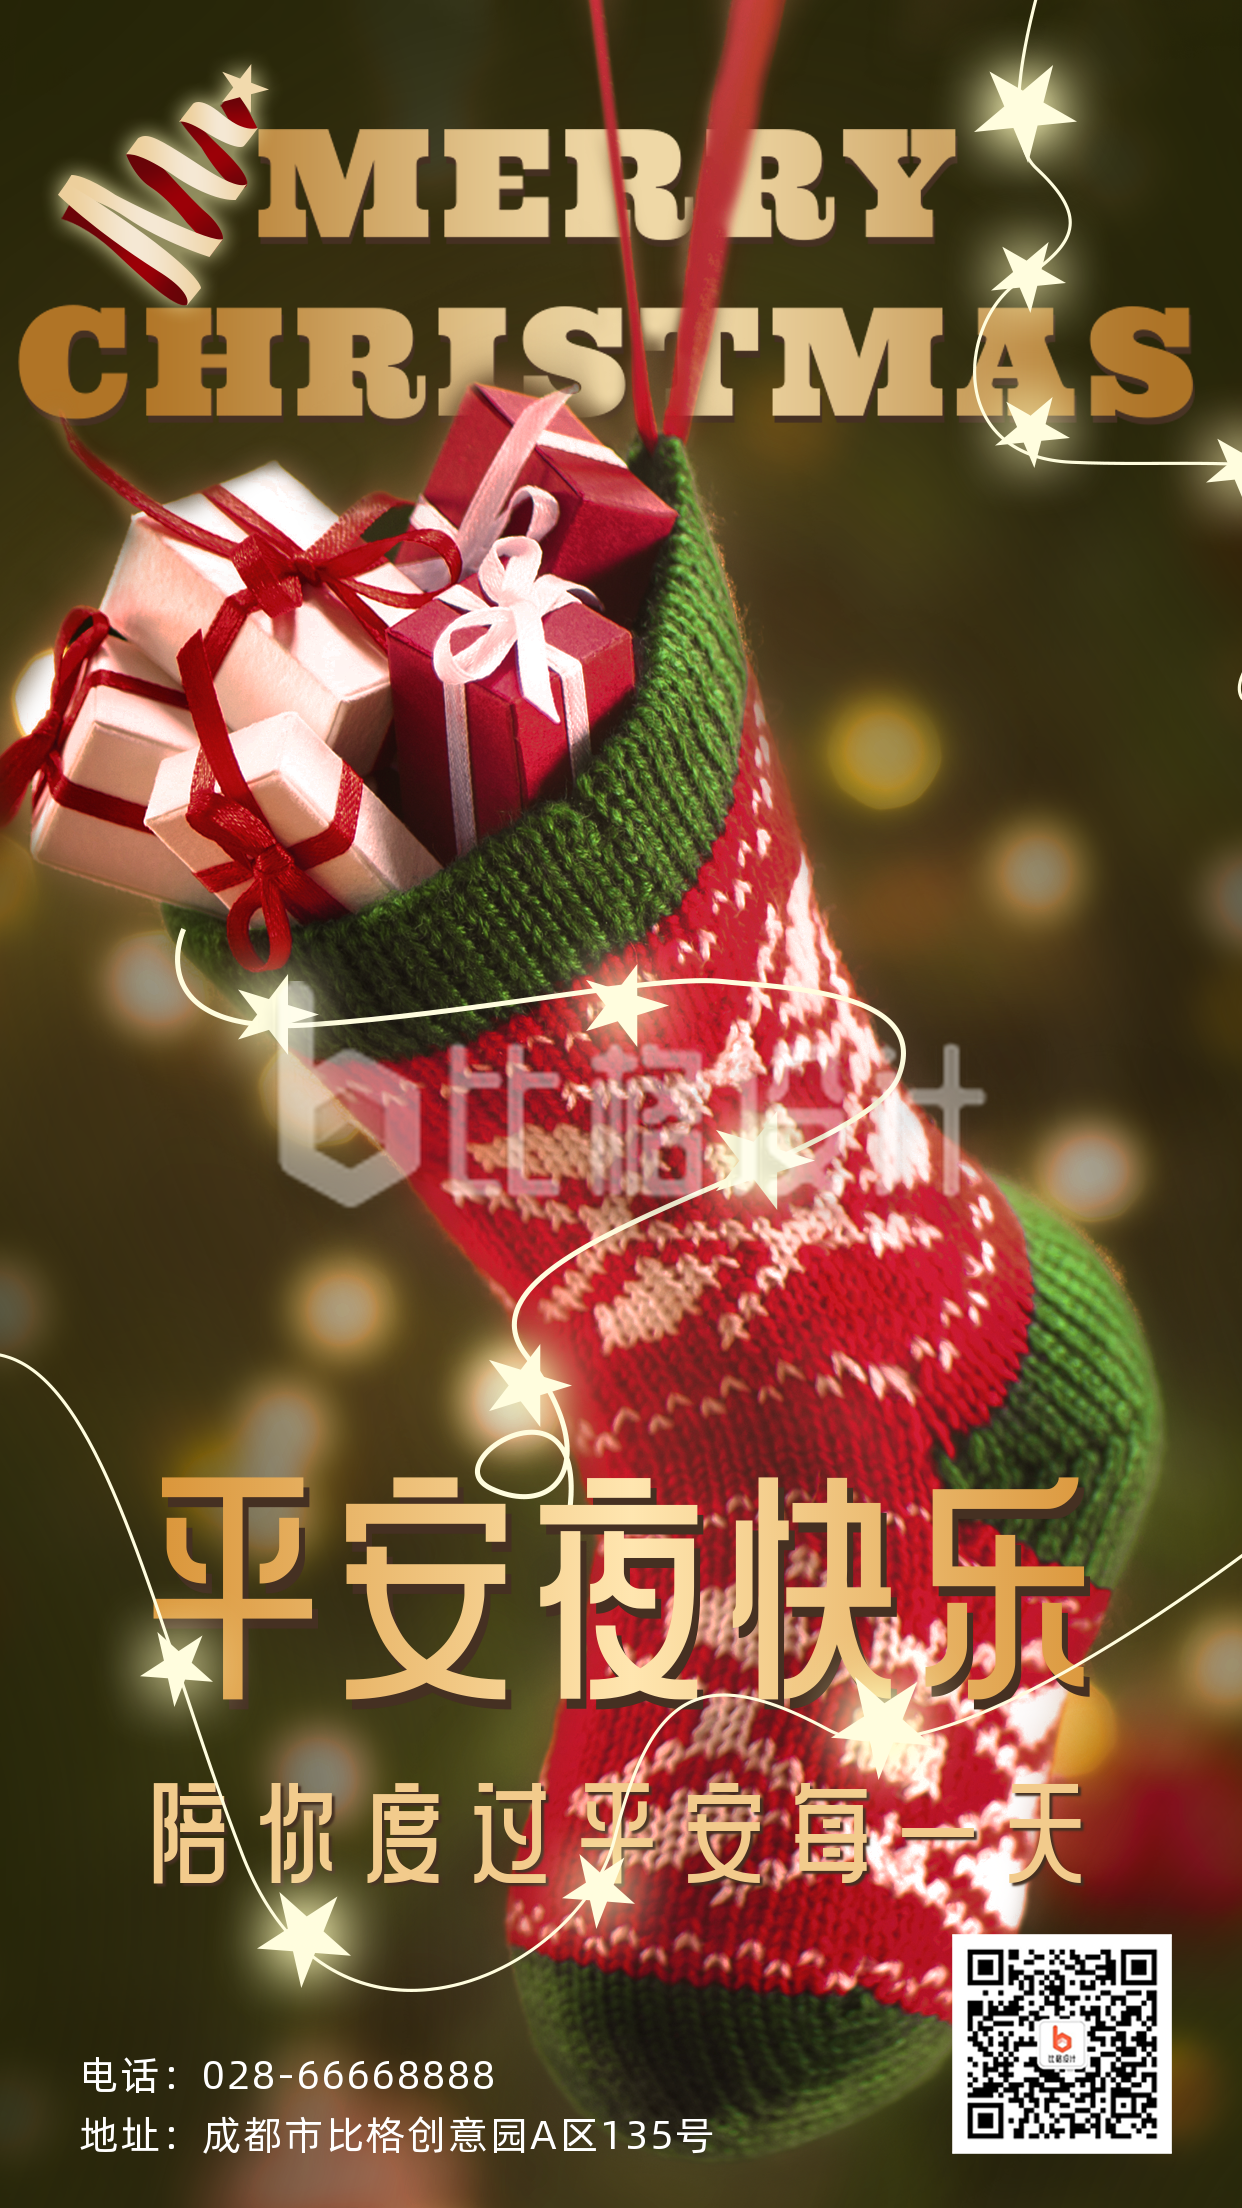 平安夜实景圣诞袜祝福手机海报